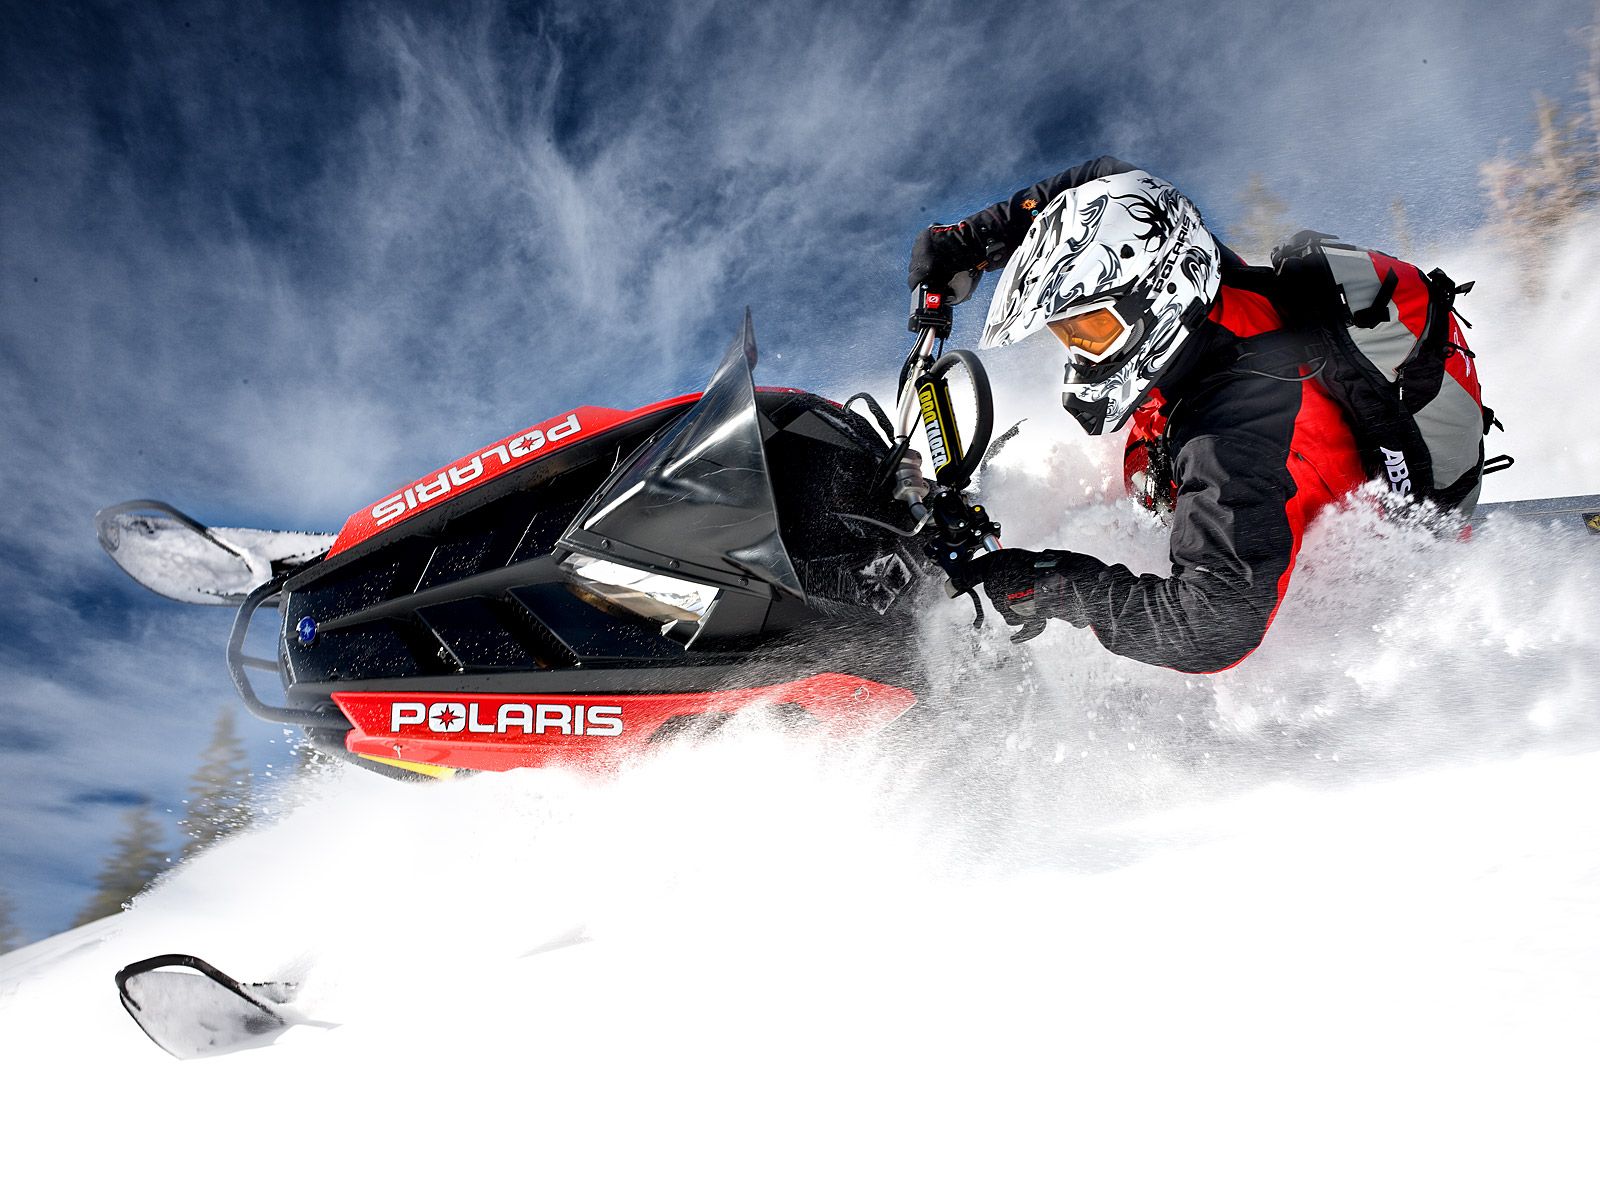 Polaris Snowmobile Wallpaper. POLARIS PRO RMK snowmobile winter sled snow t wallpaper background. Snowmobile, Winter sleds, Polaris snowmobile